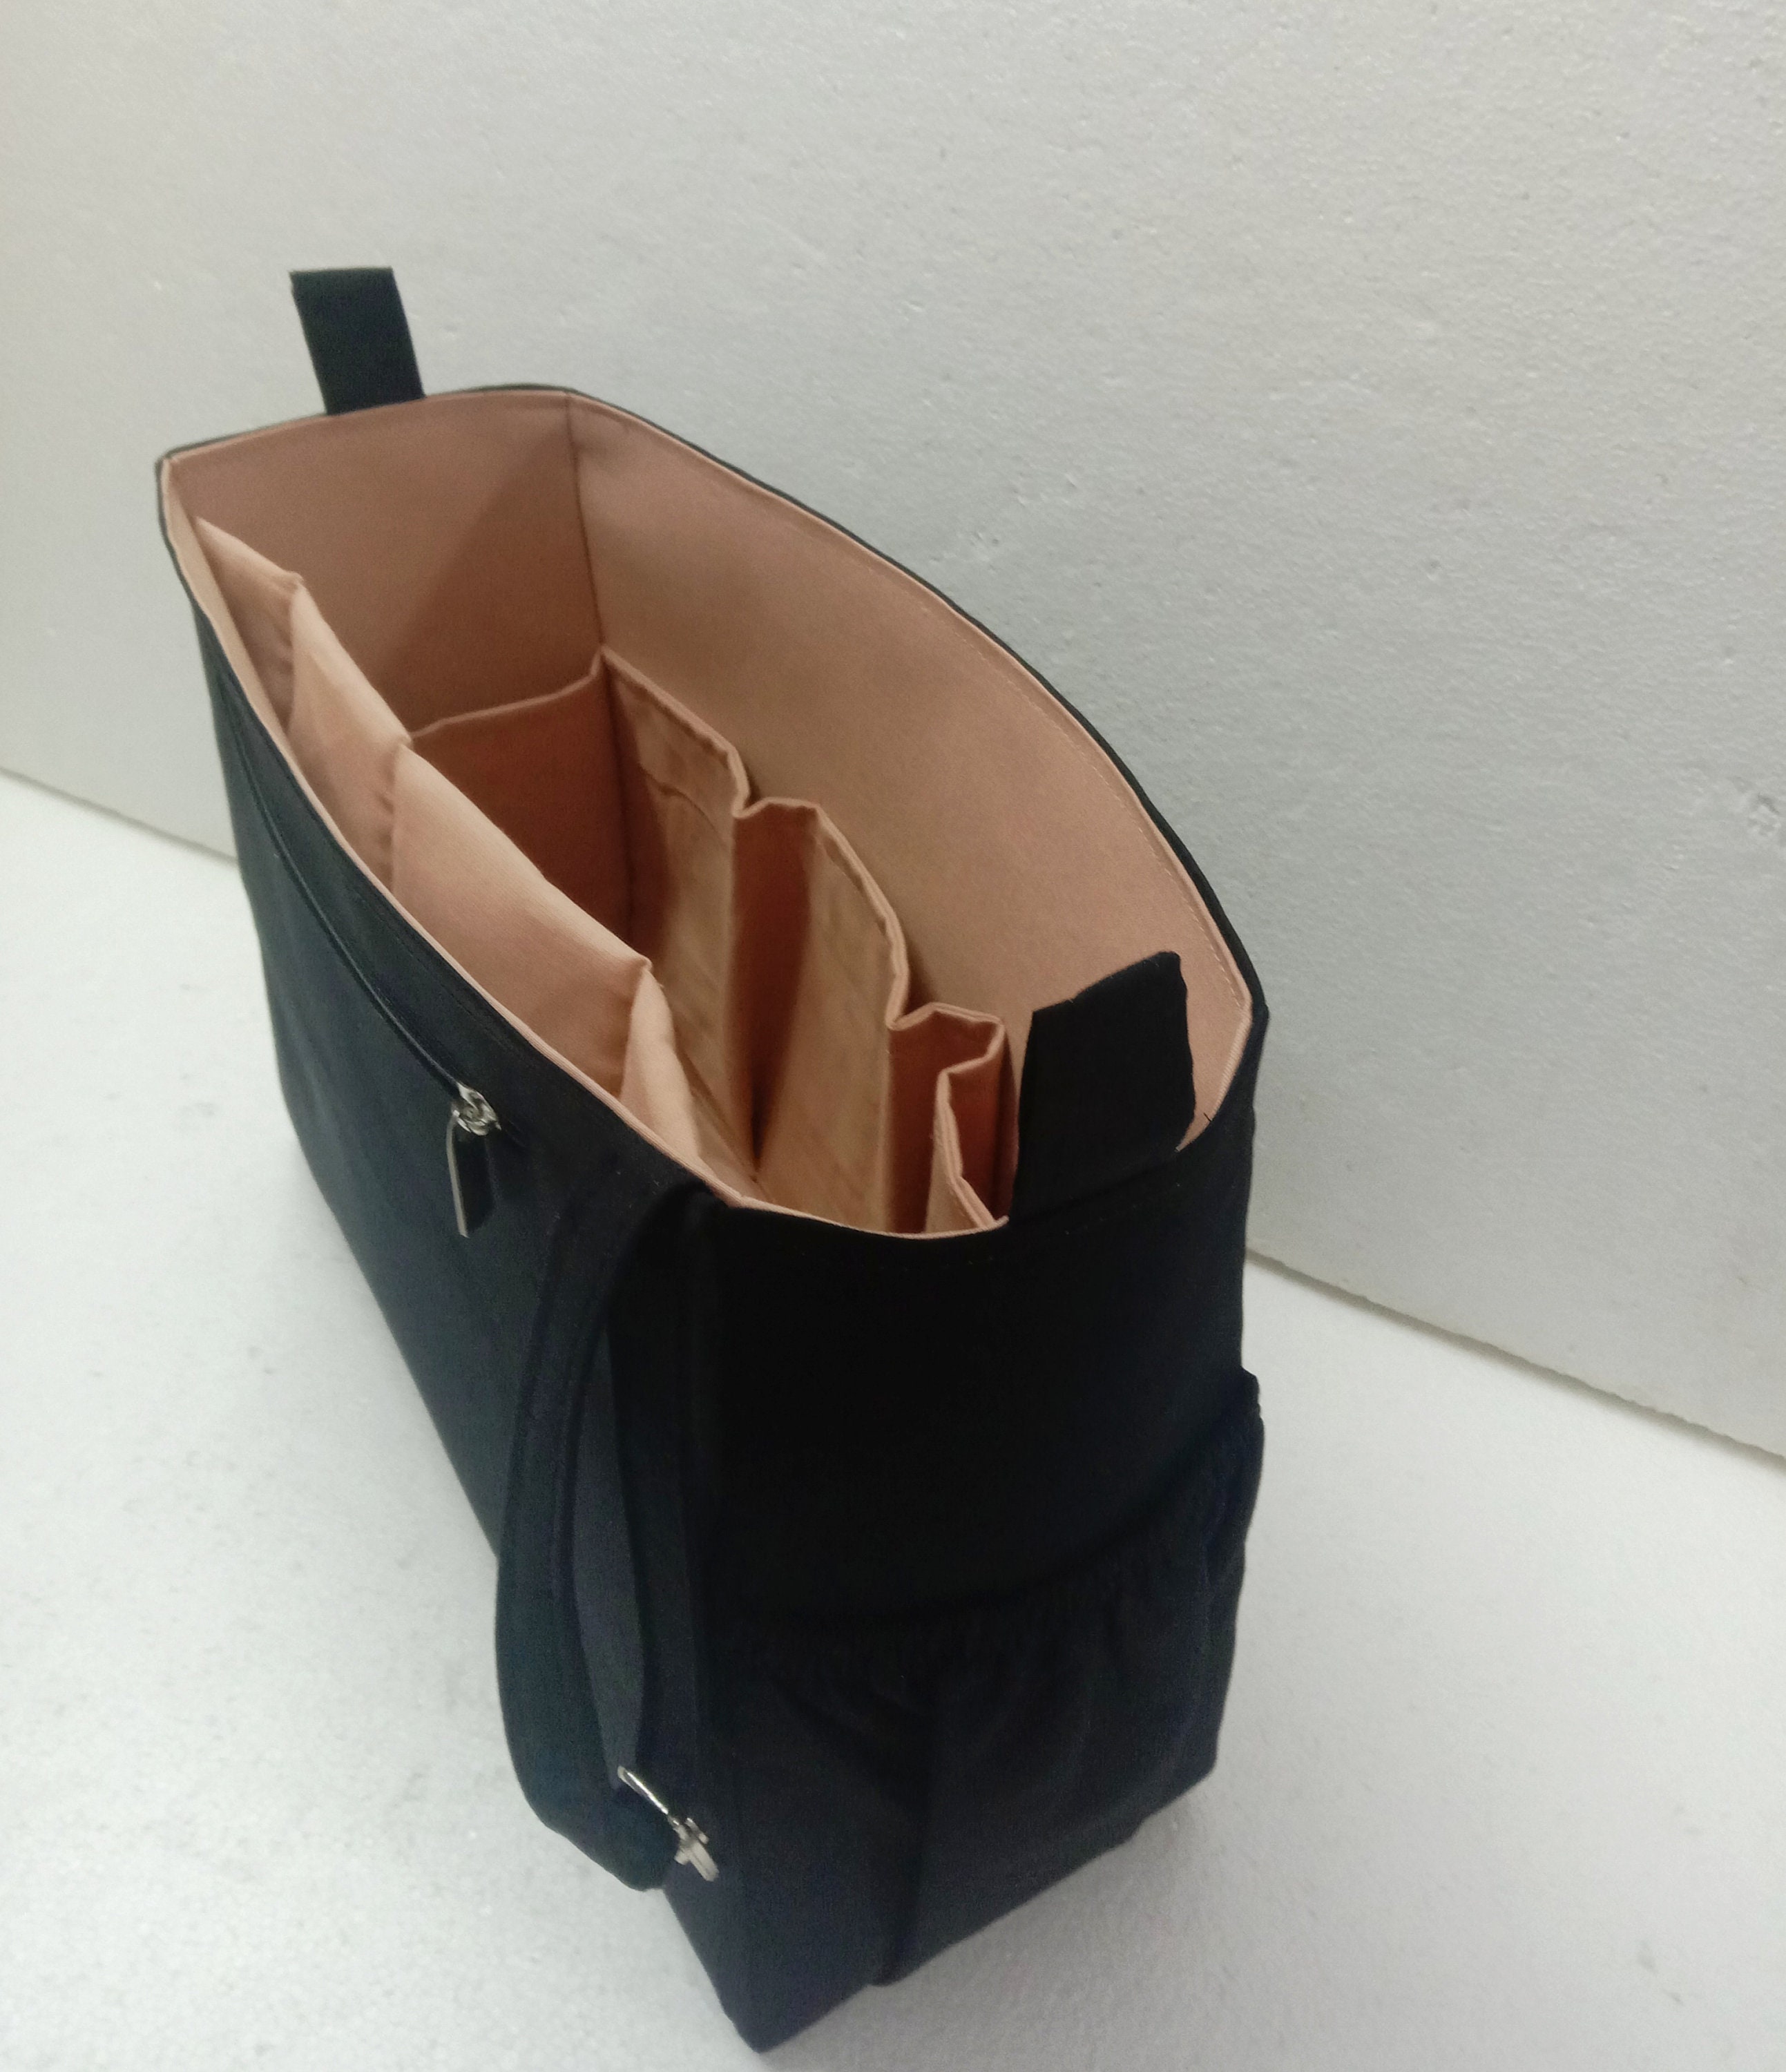 Saumur Tote Bag - Luxury Totes - Bags, Men M45914